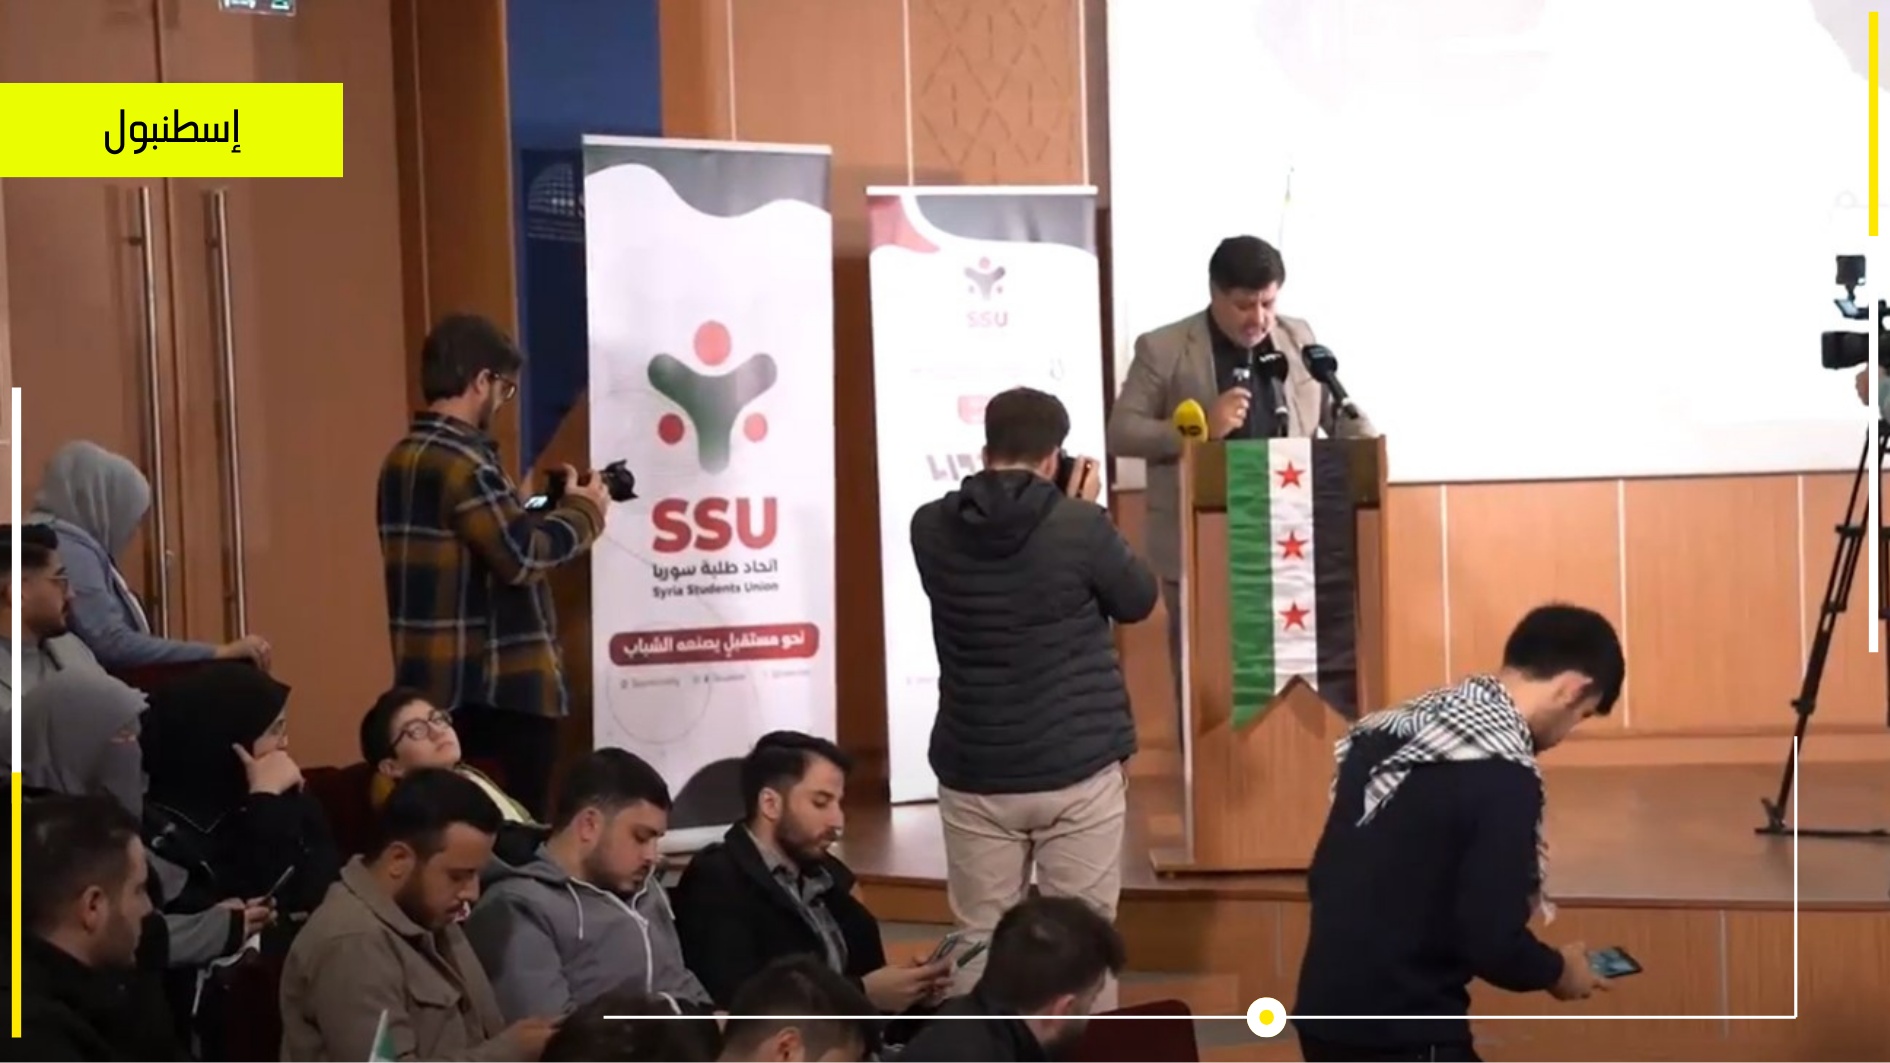 اتحاد طلبة سوريا يحيون الذكرى الثالثة عشر للثورة السورية في مدينة اسطنبول 